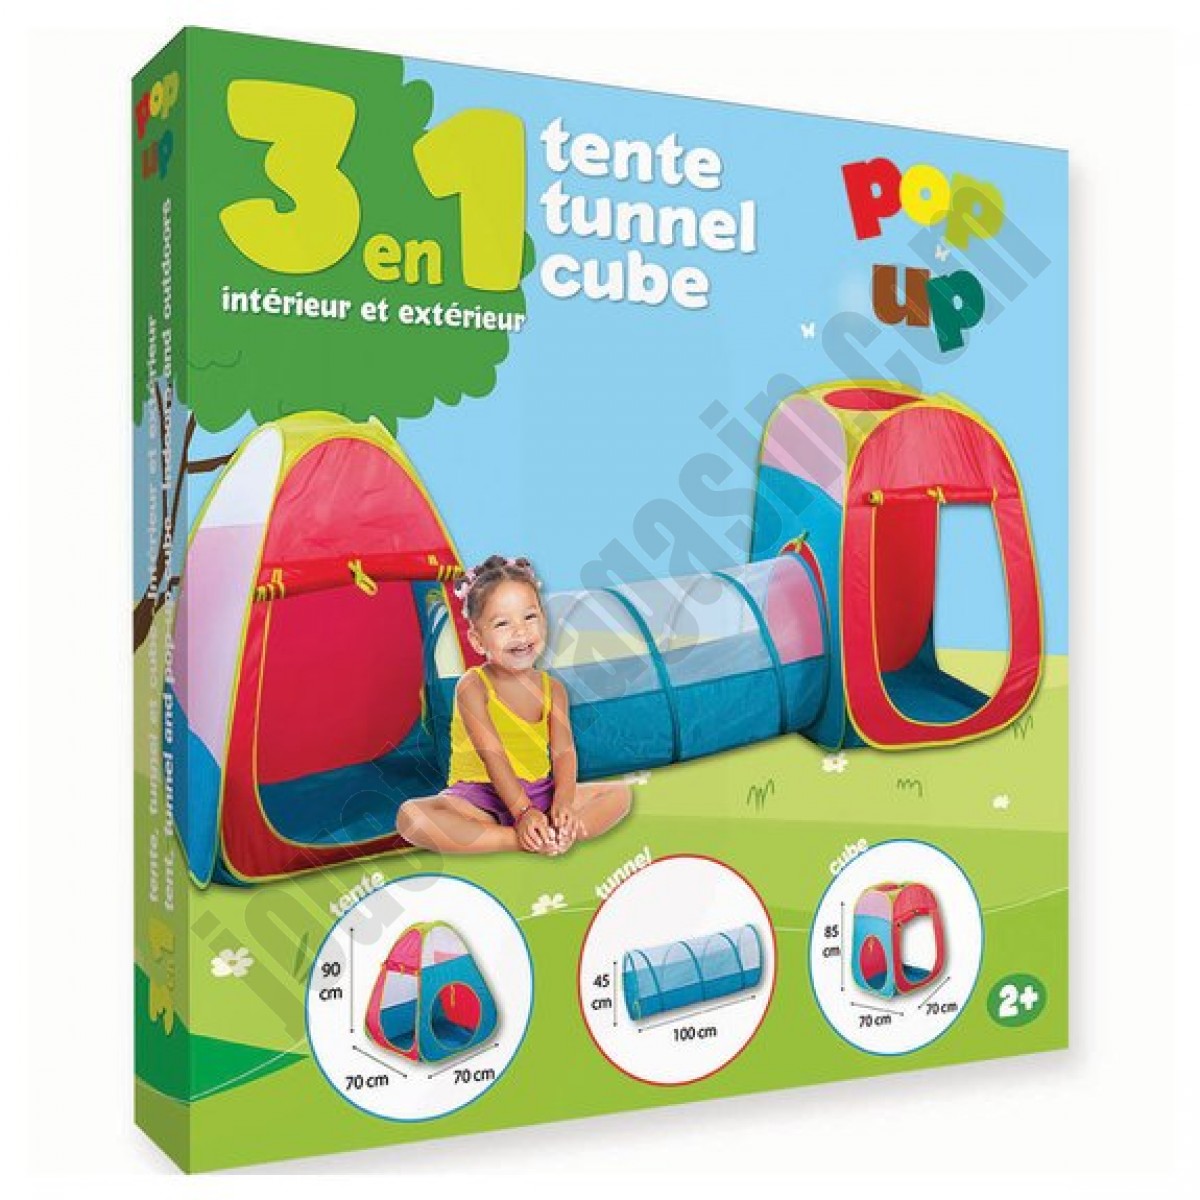 Tente tunnel et cub pop up - déstockage - Tente tunnel et cub pop up - déstockage